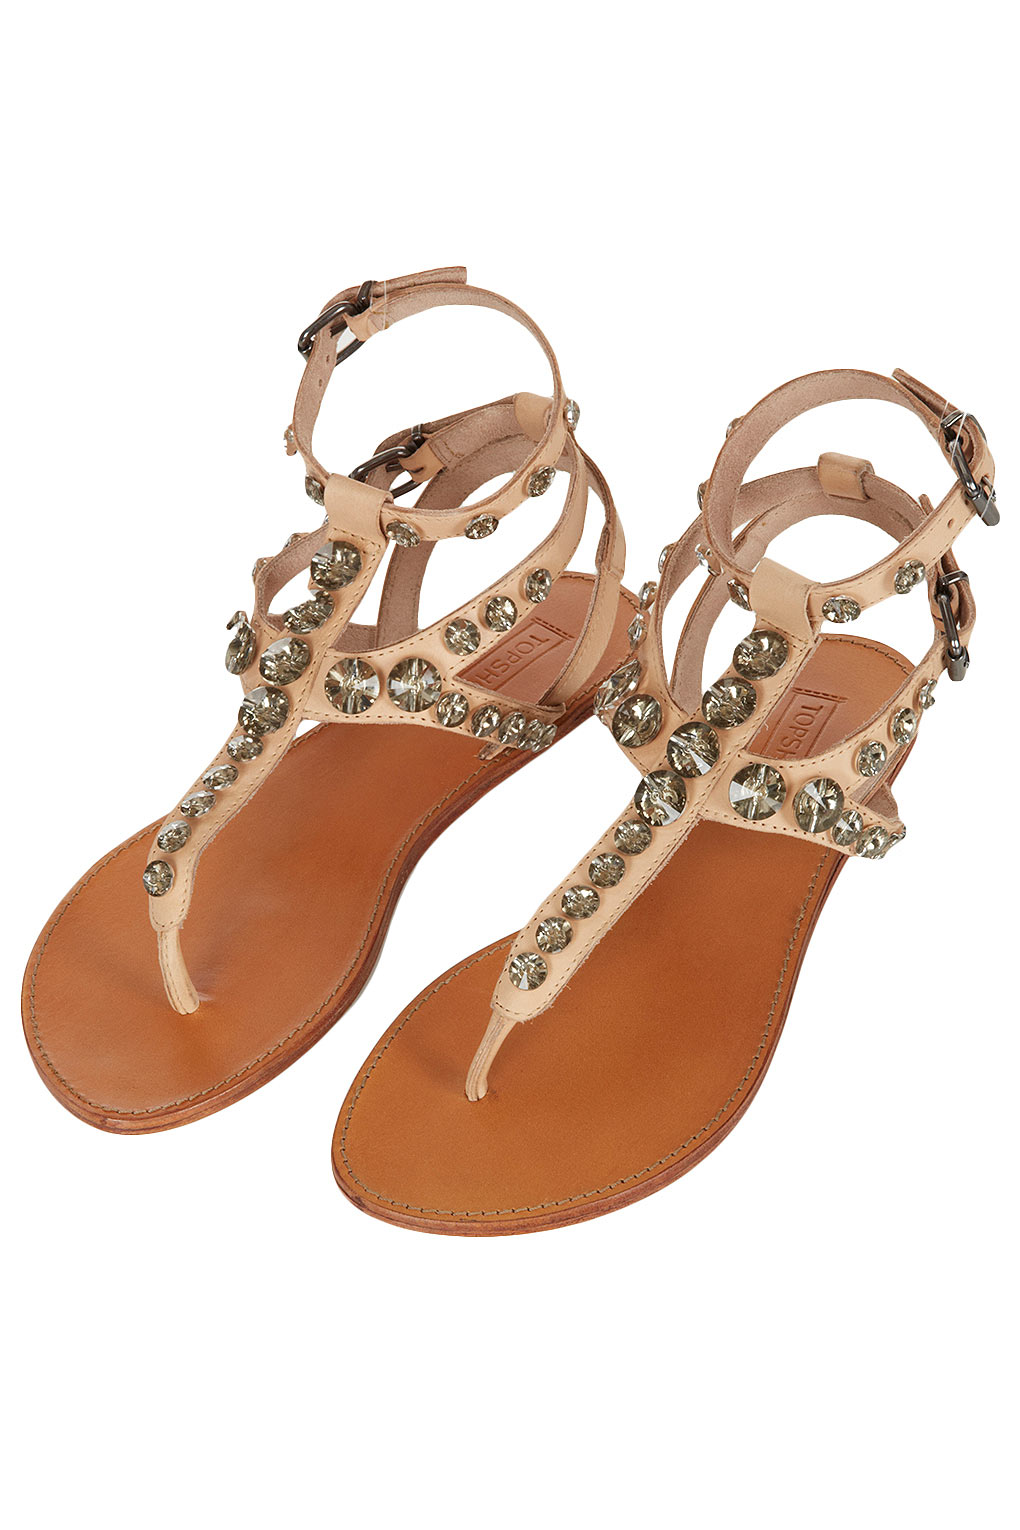 Lyst - Topshop Flaunt Embellished Sandals in Brown